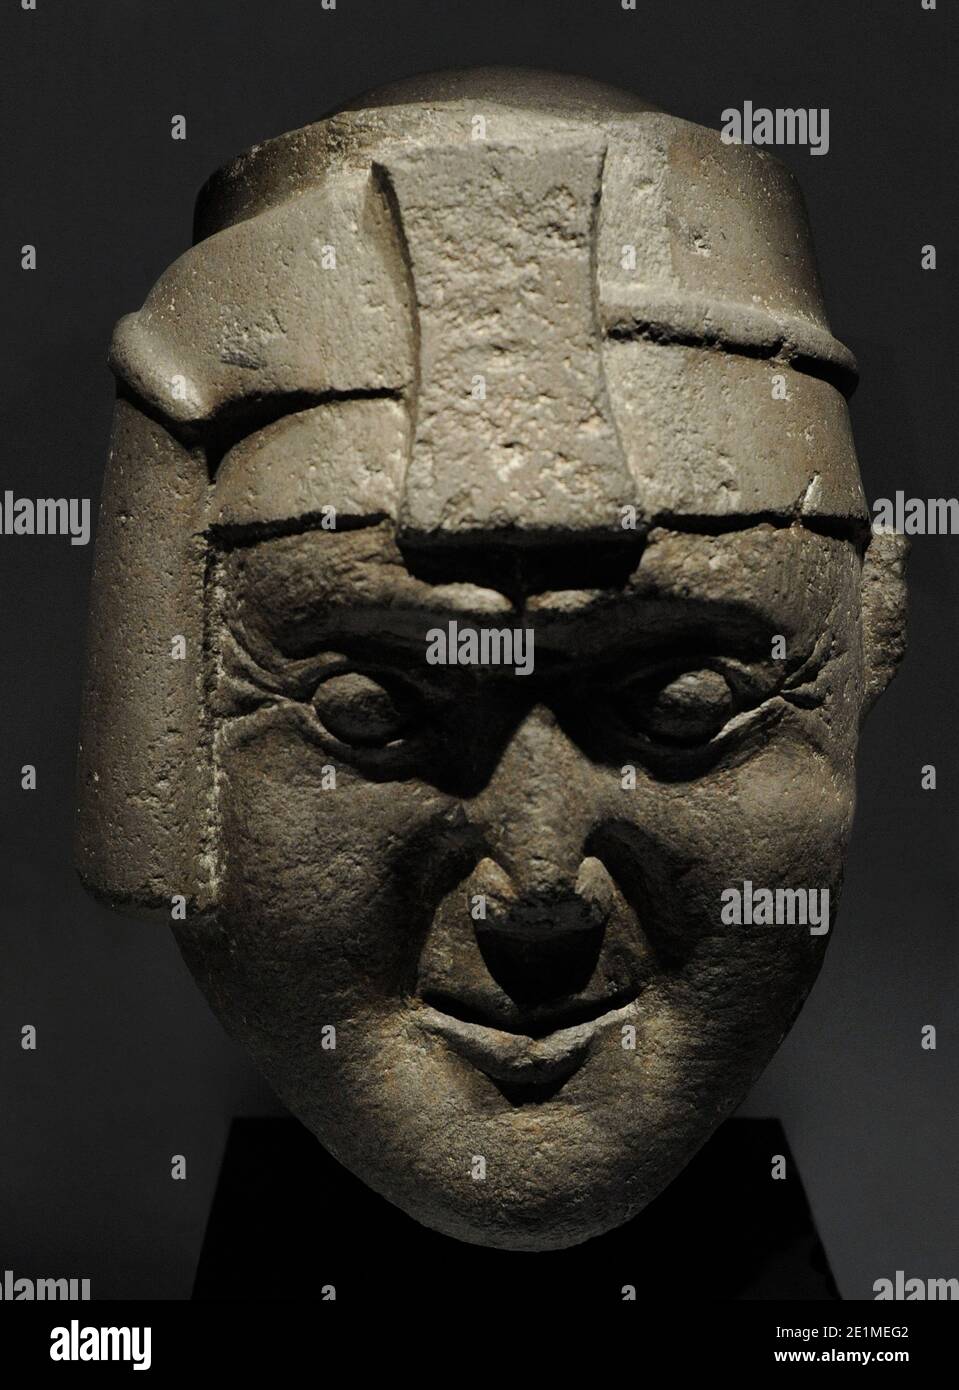 Incan tête avec lawtt'u et maskapaycha (symbole du pouvoir). Connu sous le nom de « tête de Viracocha ». Culture inca (1400-1533 AD). Diorite. Pérou. Musée des Amériques. Madrid, Espagne. Banque D'Images